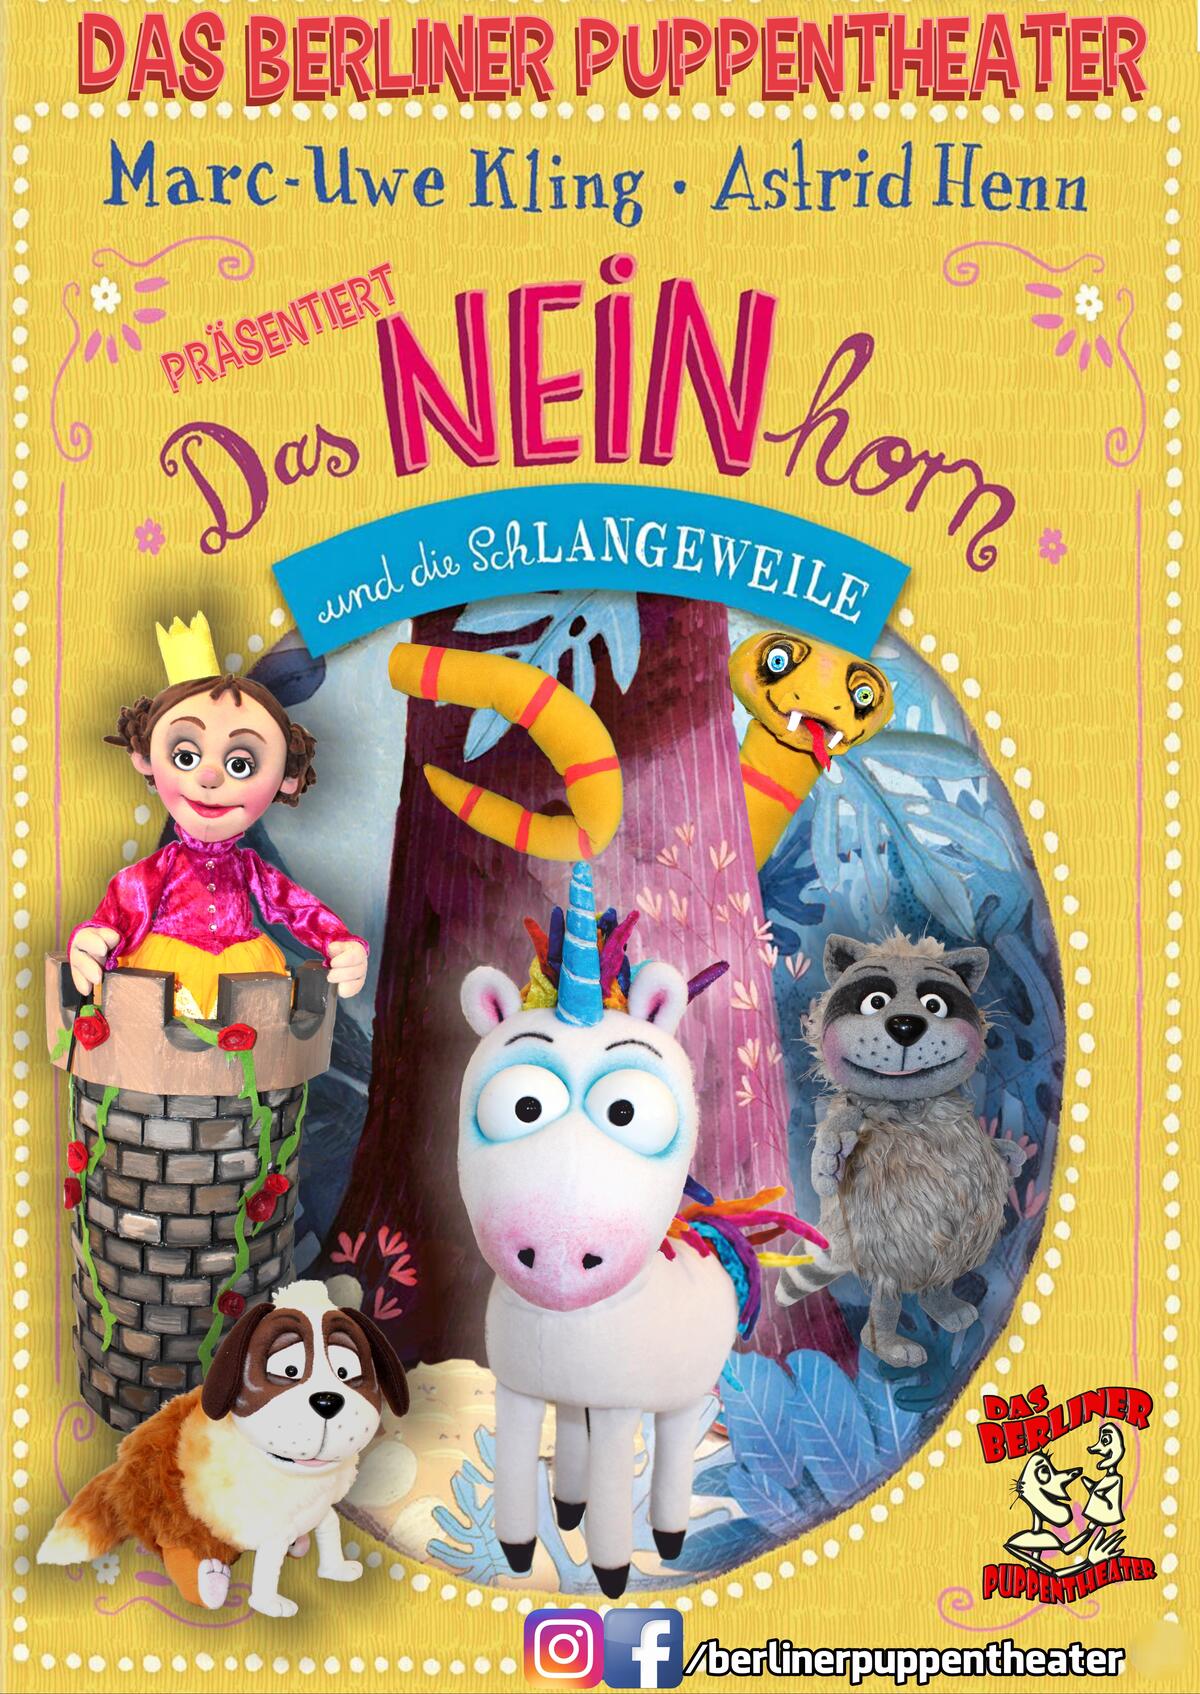 Plakat mit Nennung des Berliner Puppentheaters, des Autors Marc-Uwe Kling und der Illustratorin Astrid Henn. Im Vordergrund ein gezeichnetes Einhorn, im Hintergrund eine Schlange, ein Waschbär, im Vordergrund ein Hund. 